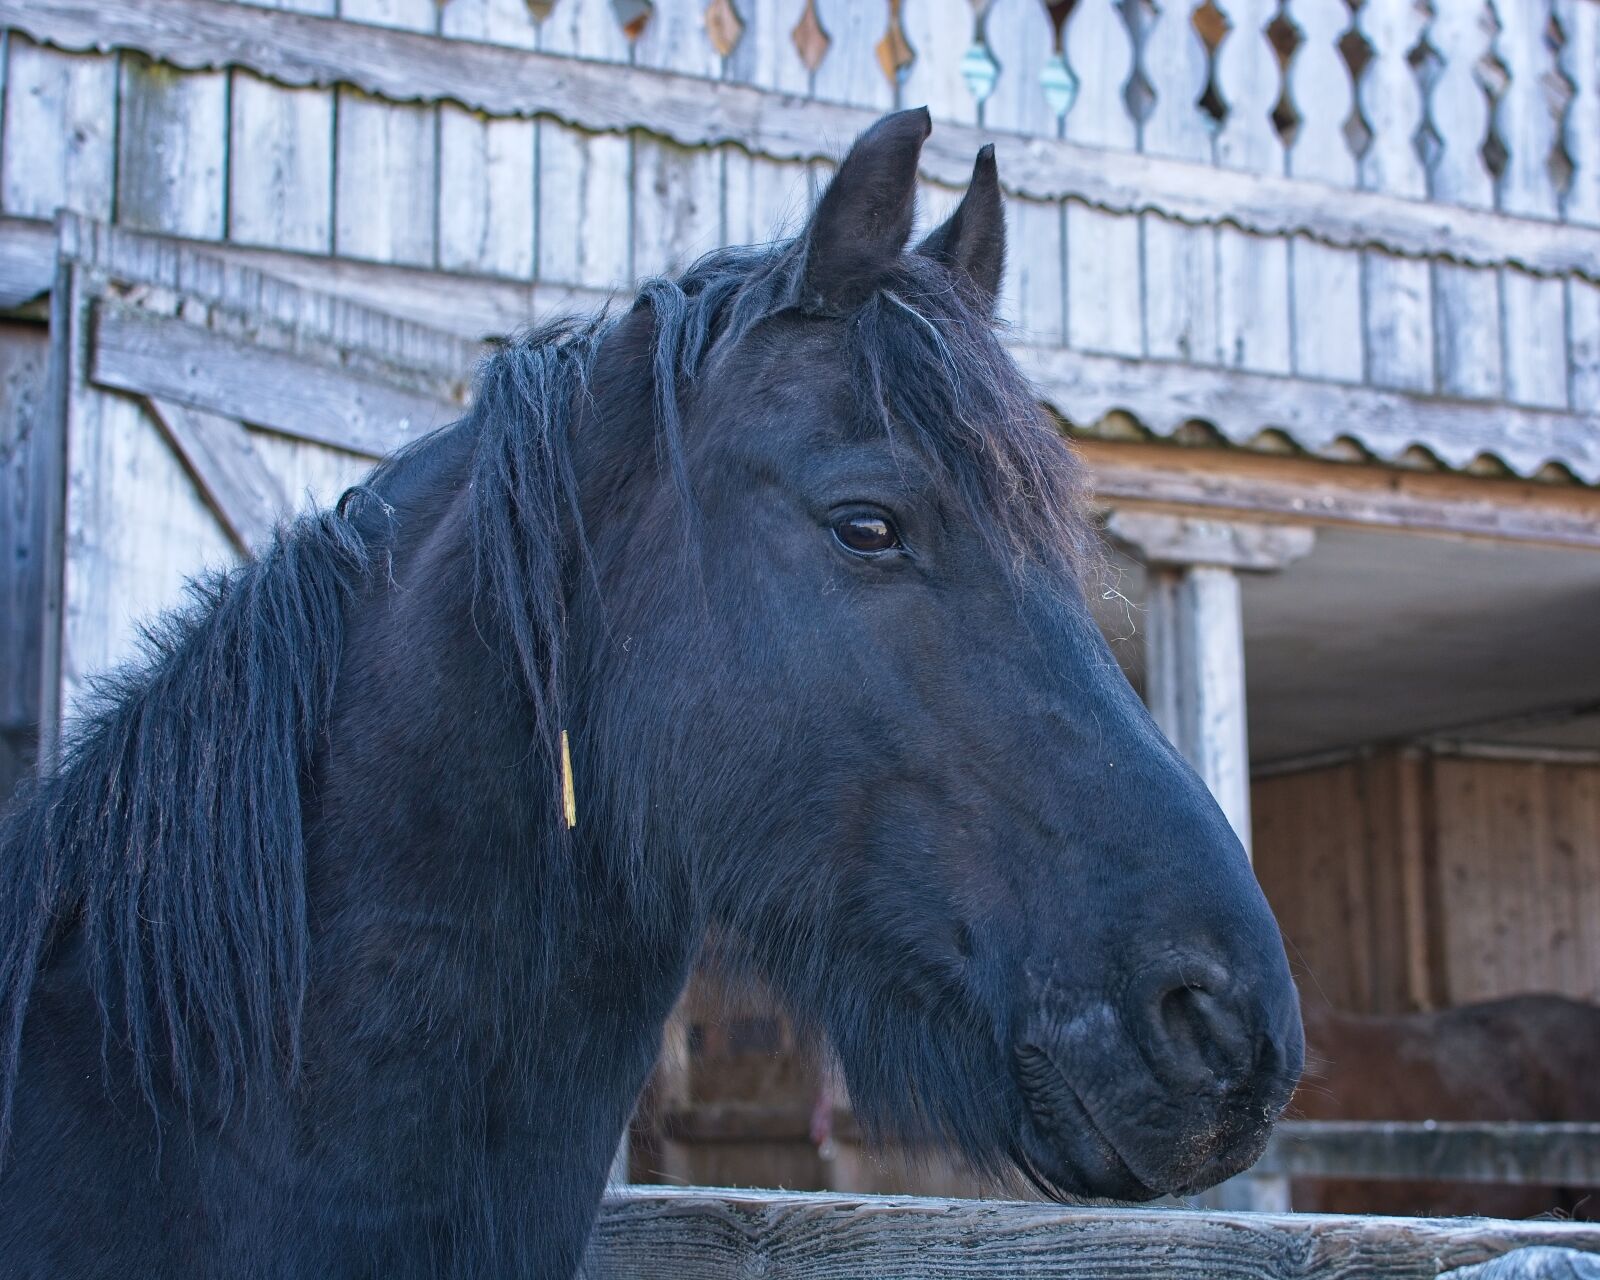 Nikon AF-S DX Nikkor 35mm F1.8G sample photo. Horse, head, animal photography